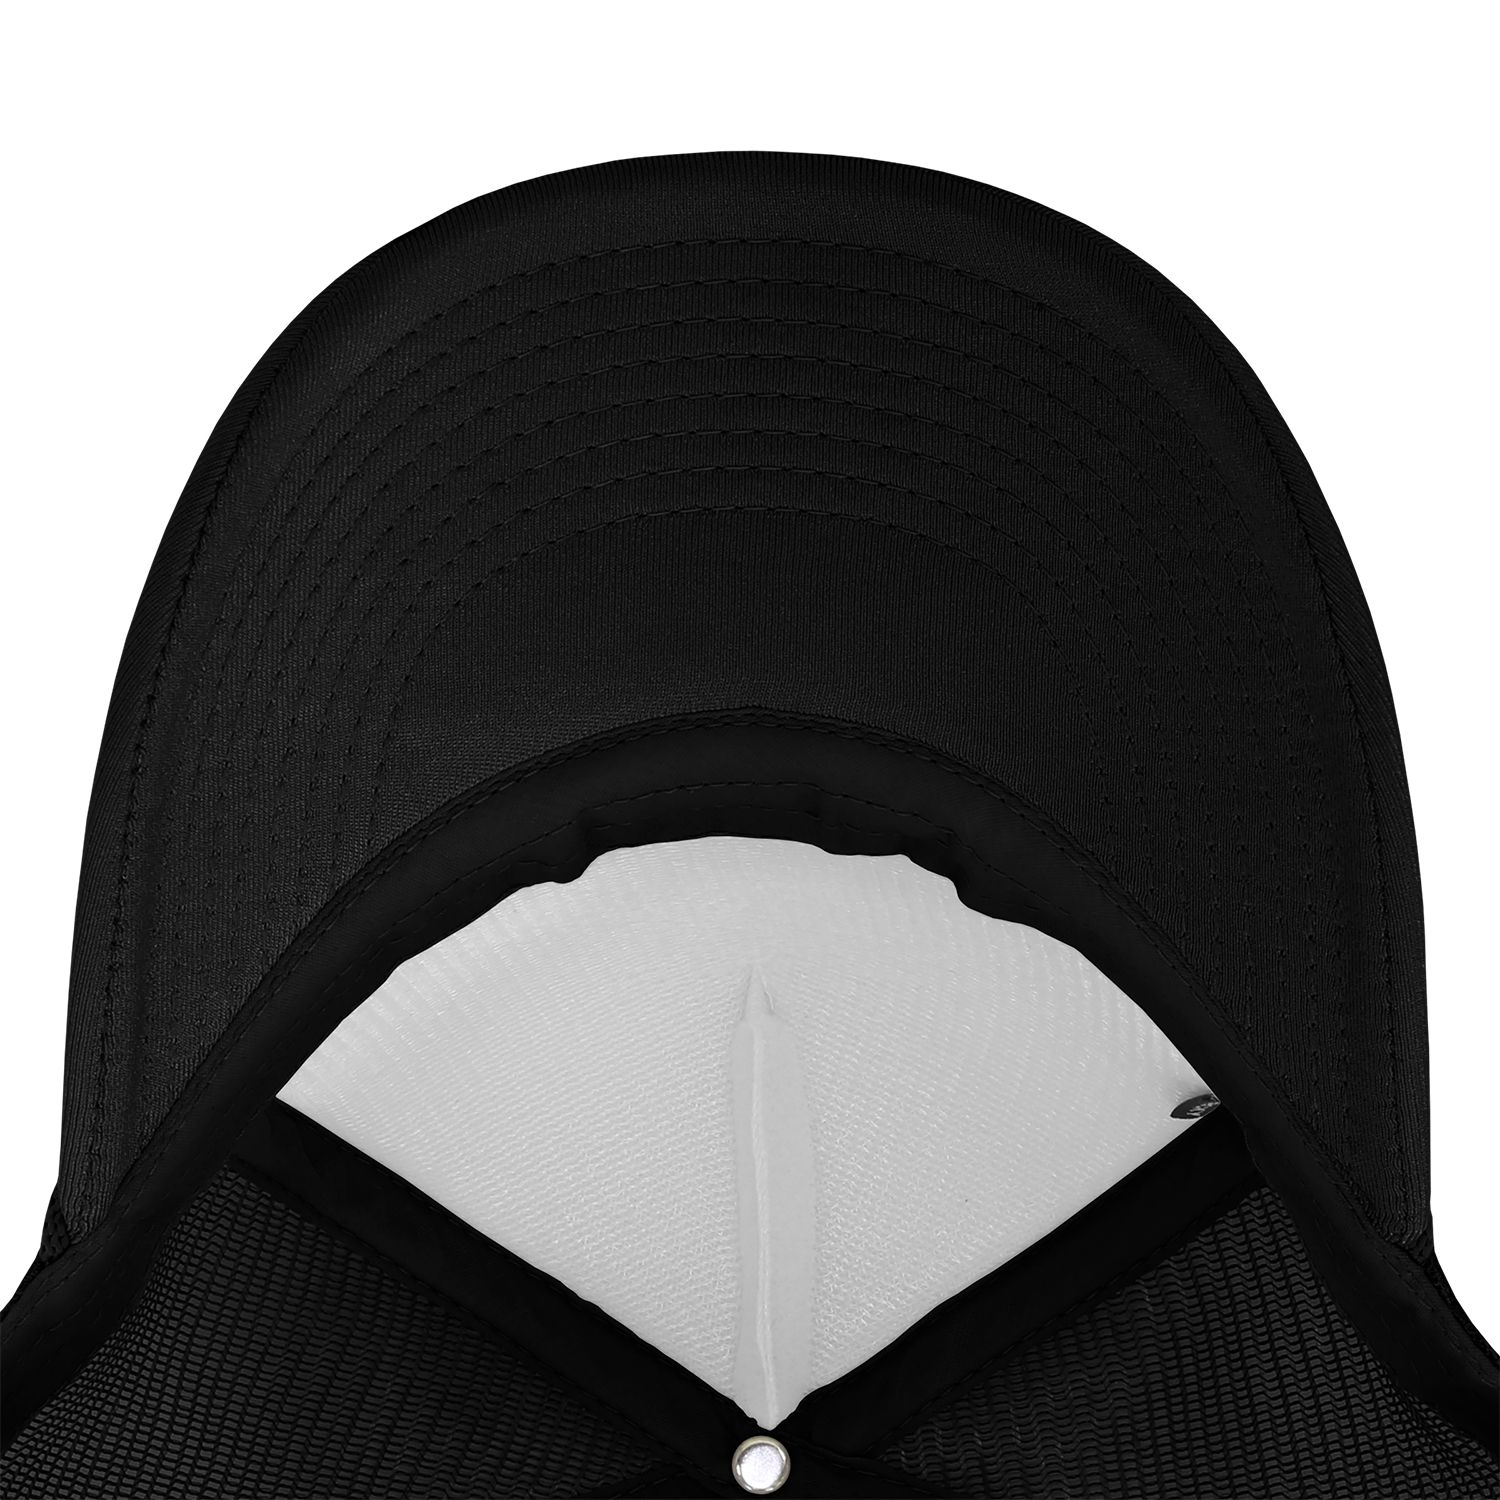 Decky 223 - Blank Solid Color, Flat Bill Foam Trucker Hat – The